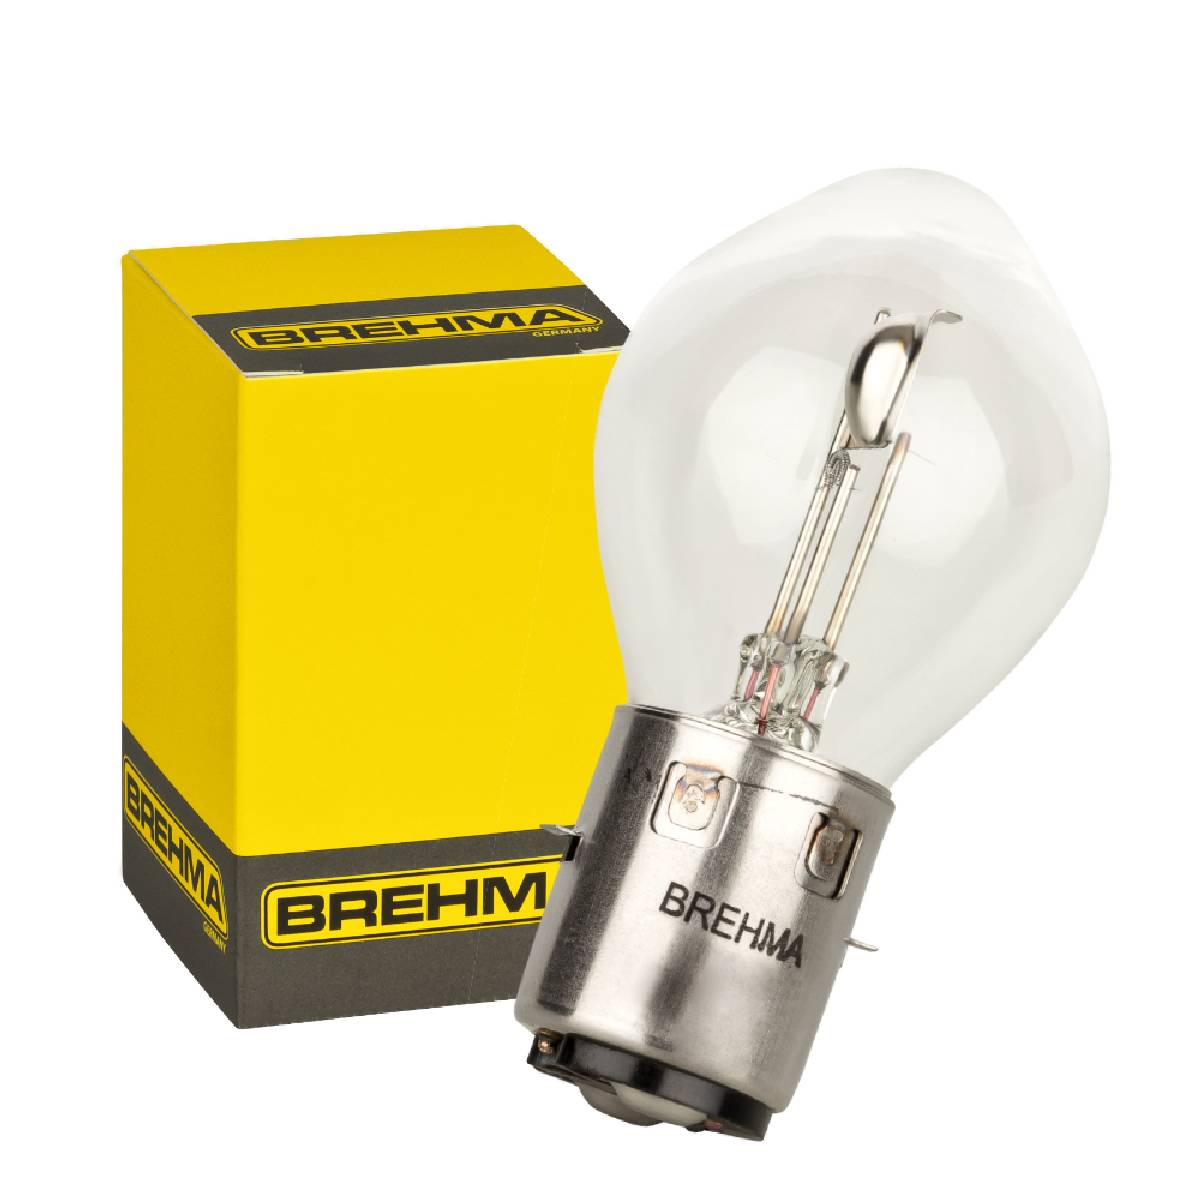 Auto-Lampen-Discount - H7 Lampen und mehr günstig kaufen - 10x BREHMA  Classic H4 12V 60/55W KFZ Halogen Lampe P43t